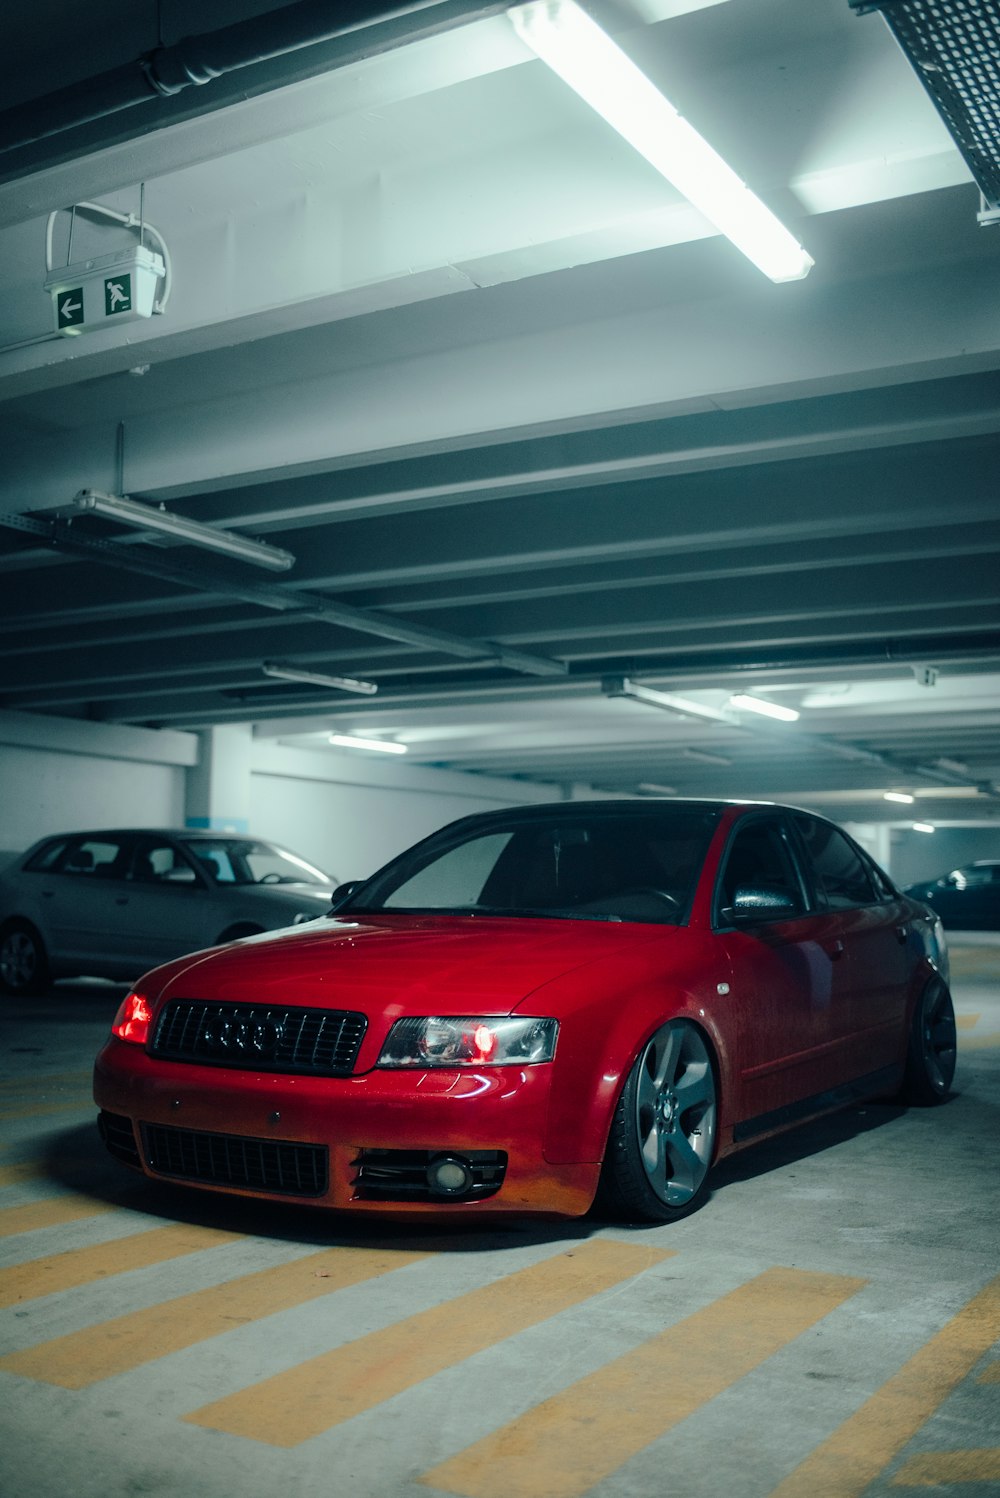 une voiture rouge garée dans un garage